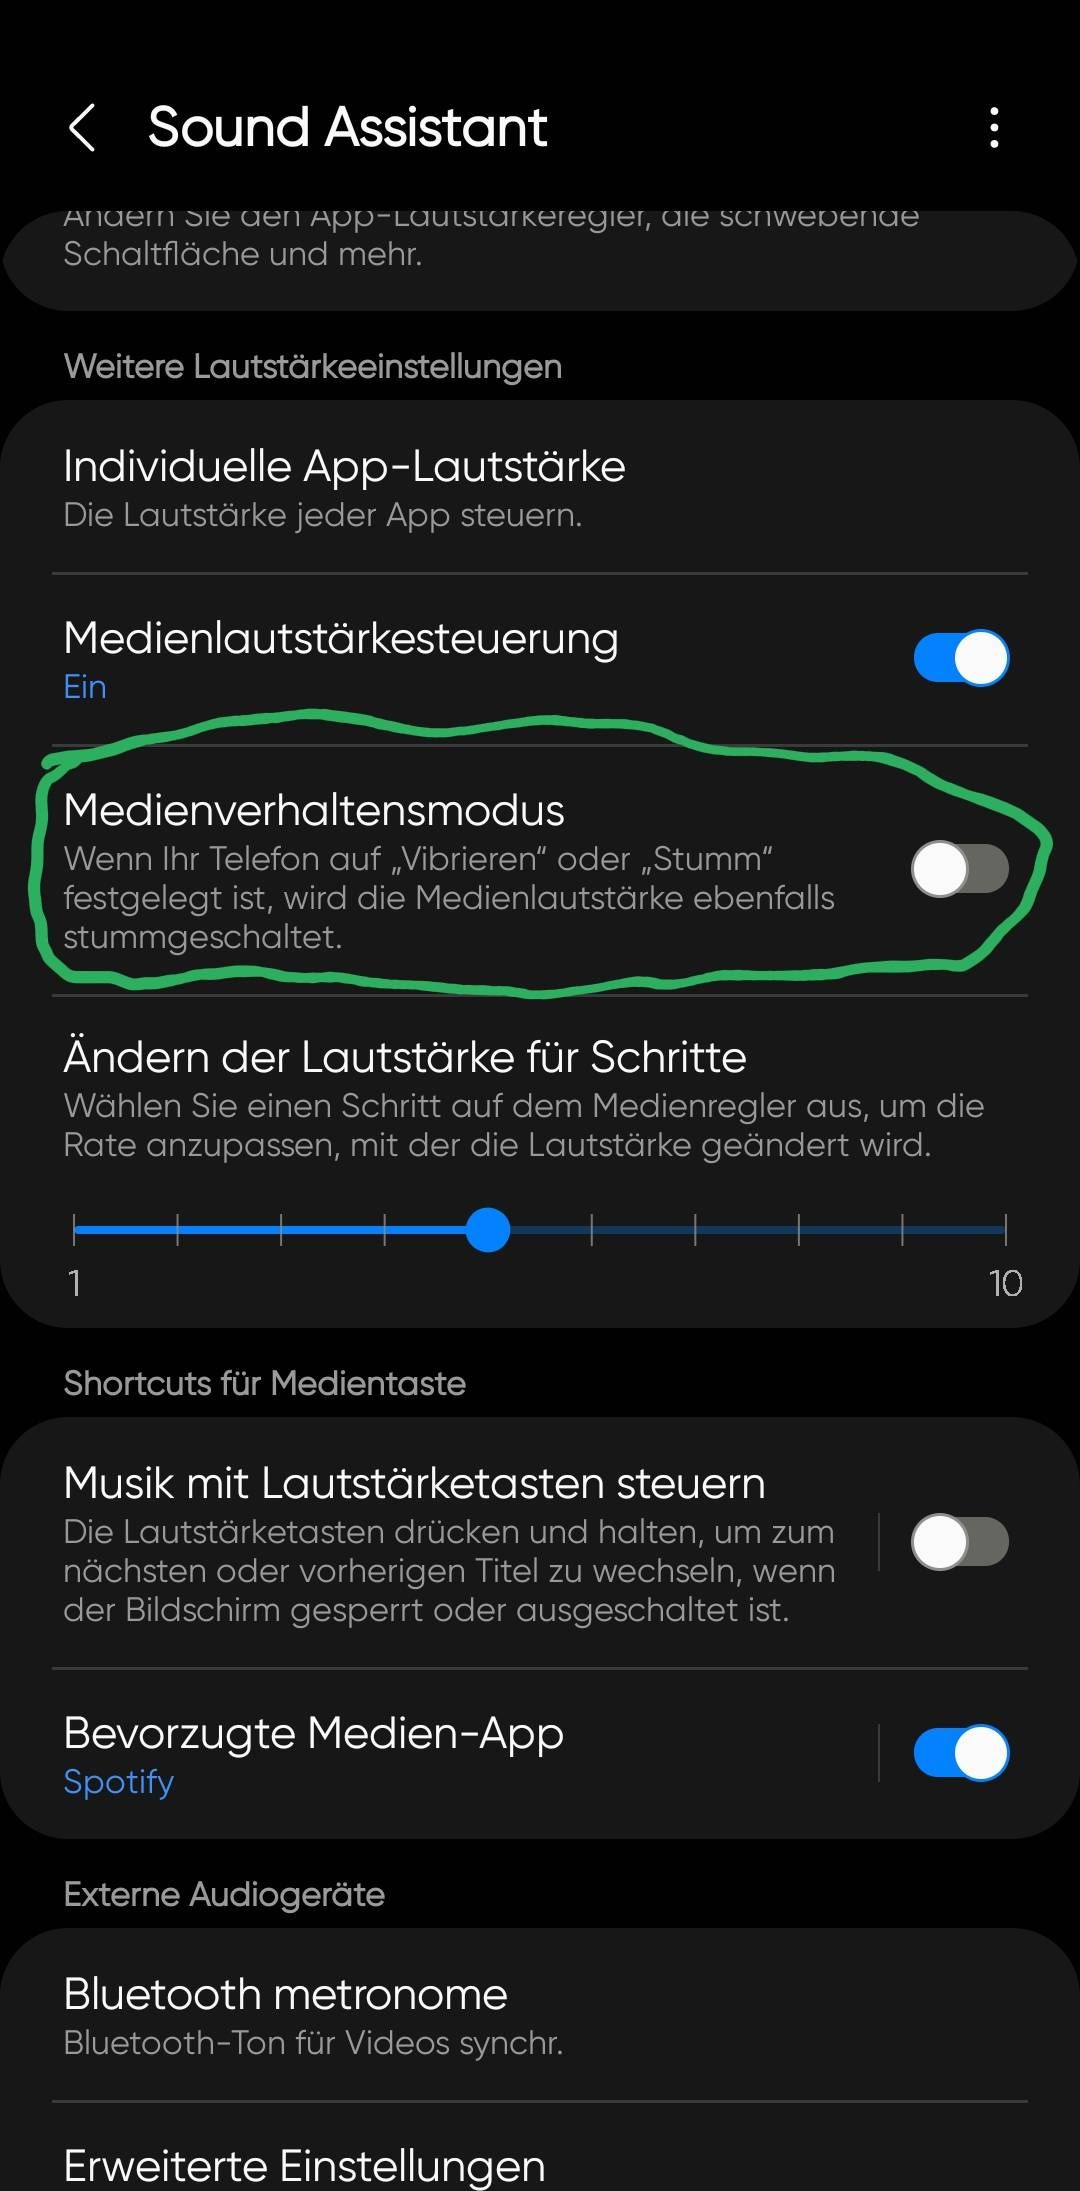 Nach Update auf Android 12: Audiowiedergabe über Bluetooth nicht nutzbar –  Seite 3 - Samsung Community